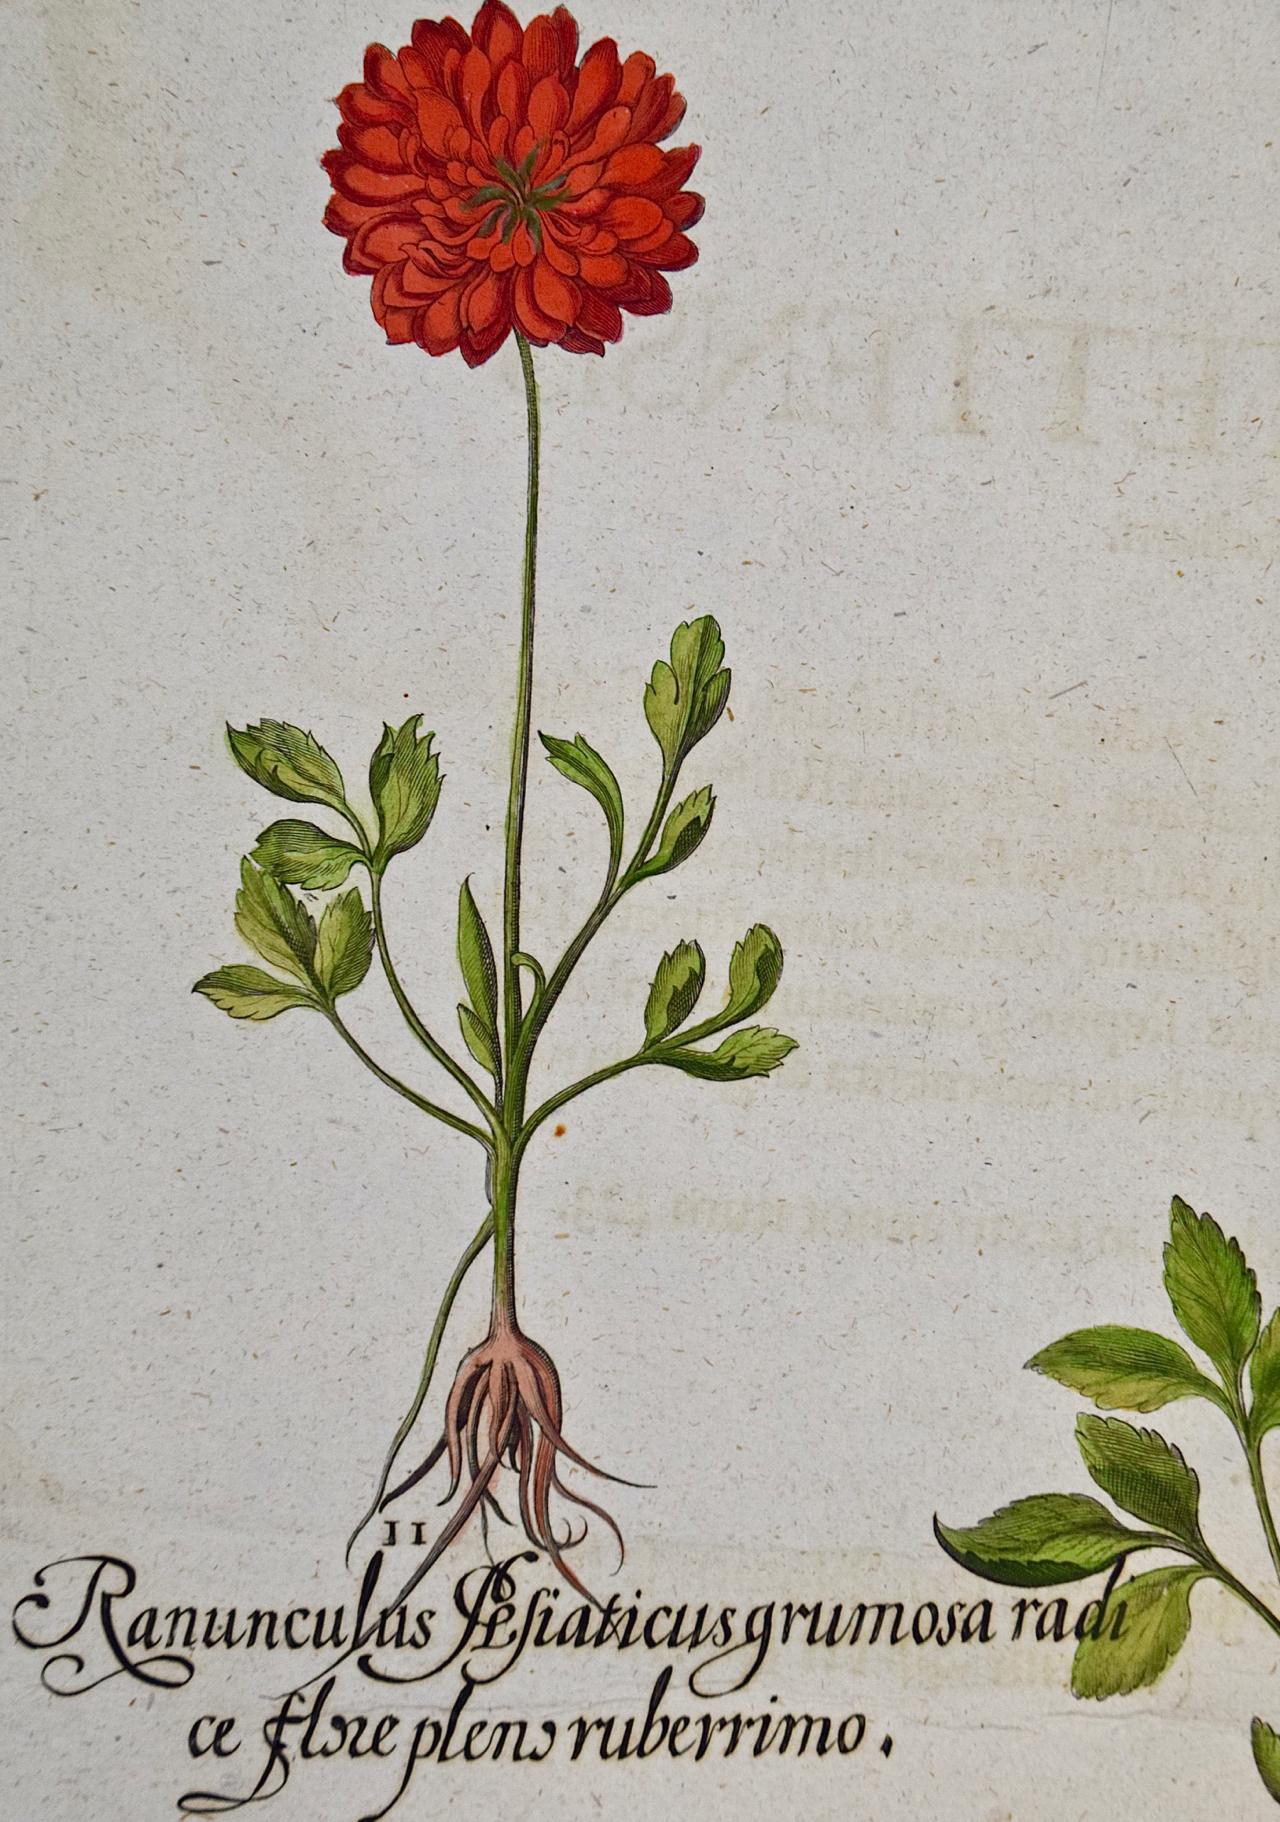 Une coupe de beurre fleurs : Gravure botanique colorée à la main par Besler du 18ème siècle - Print de Basilius Besler